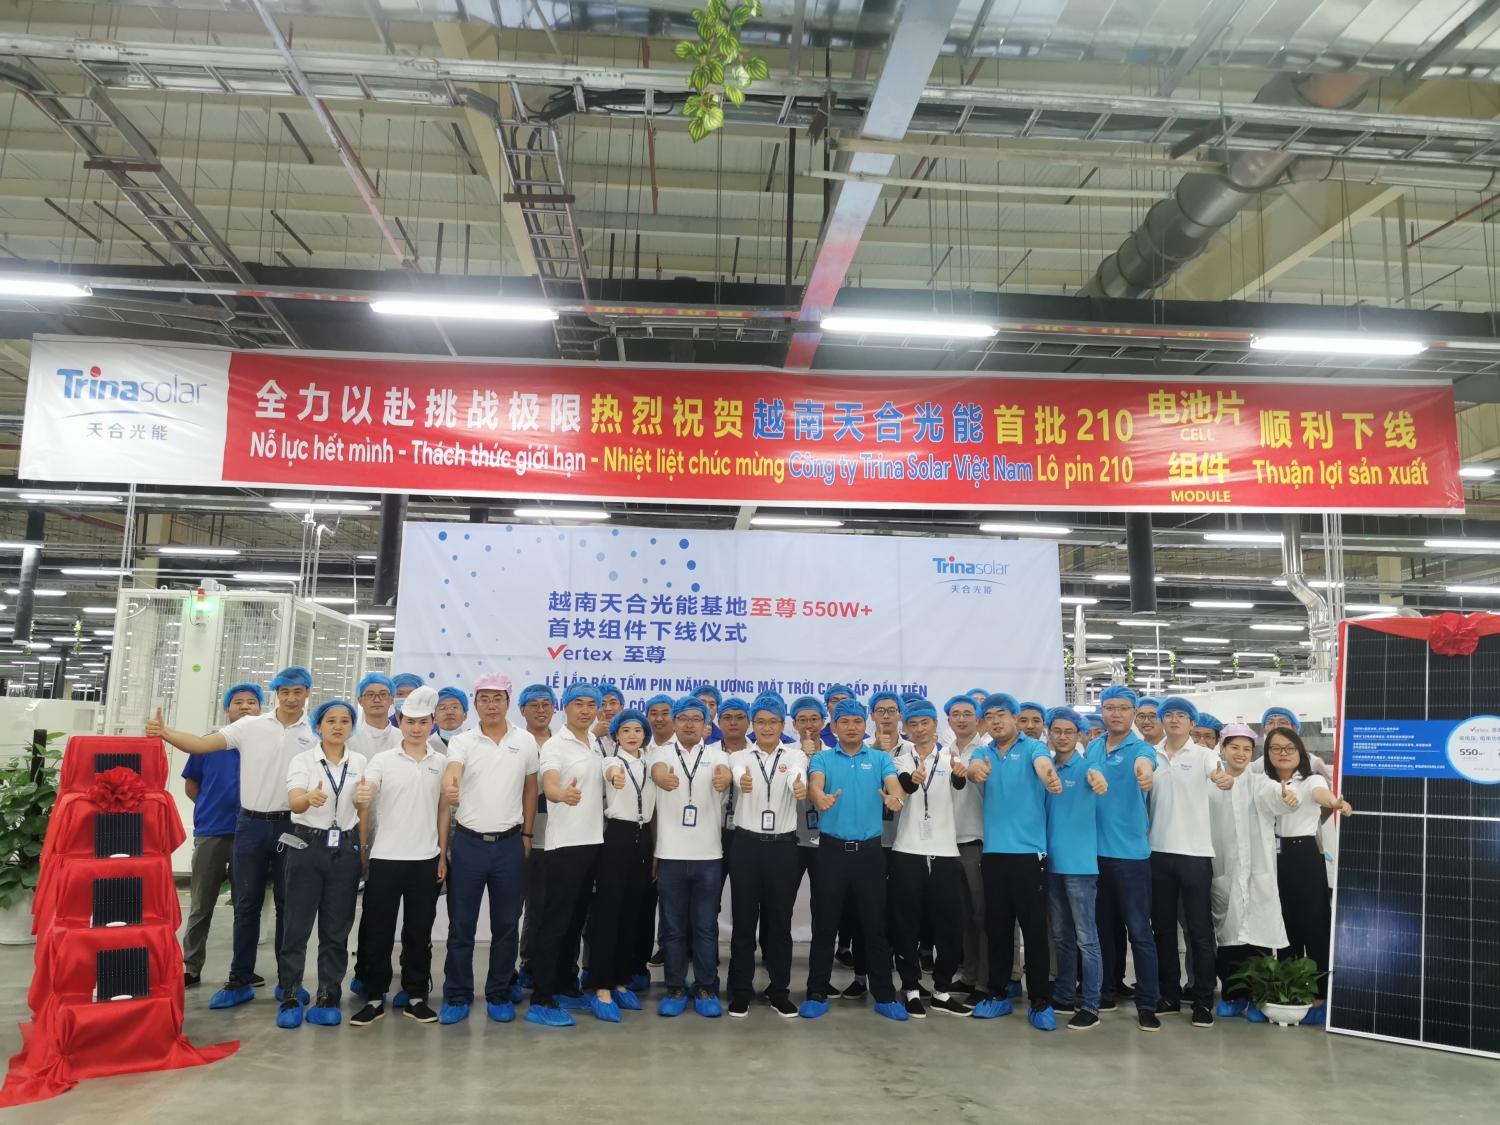 Trina Solar cung cấp các mô-đun Vertex công suất cao 550W sản xuất từ nhà máy Việt Nam cho thị trường Bắc Mỹ